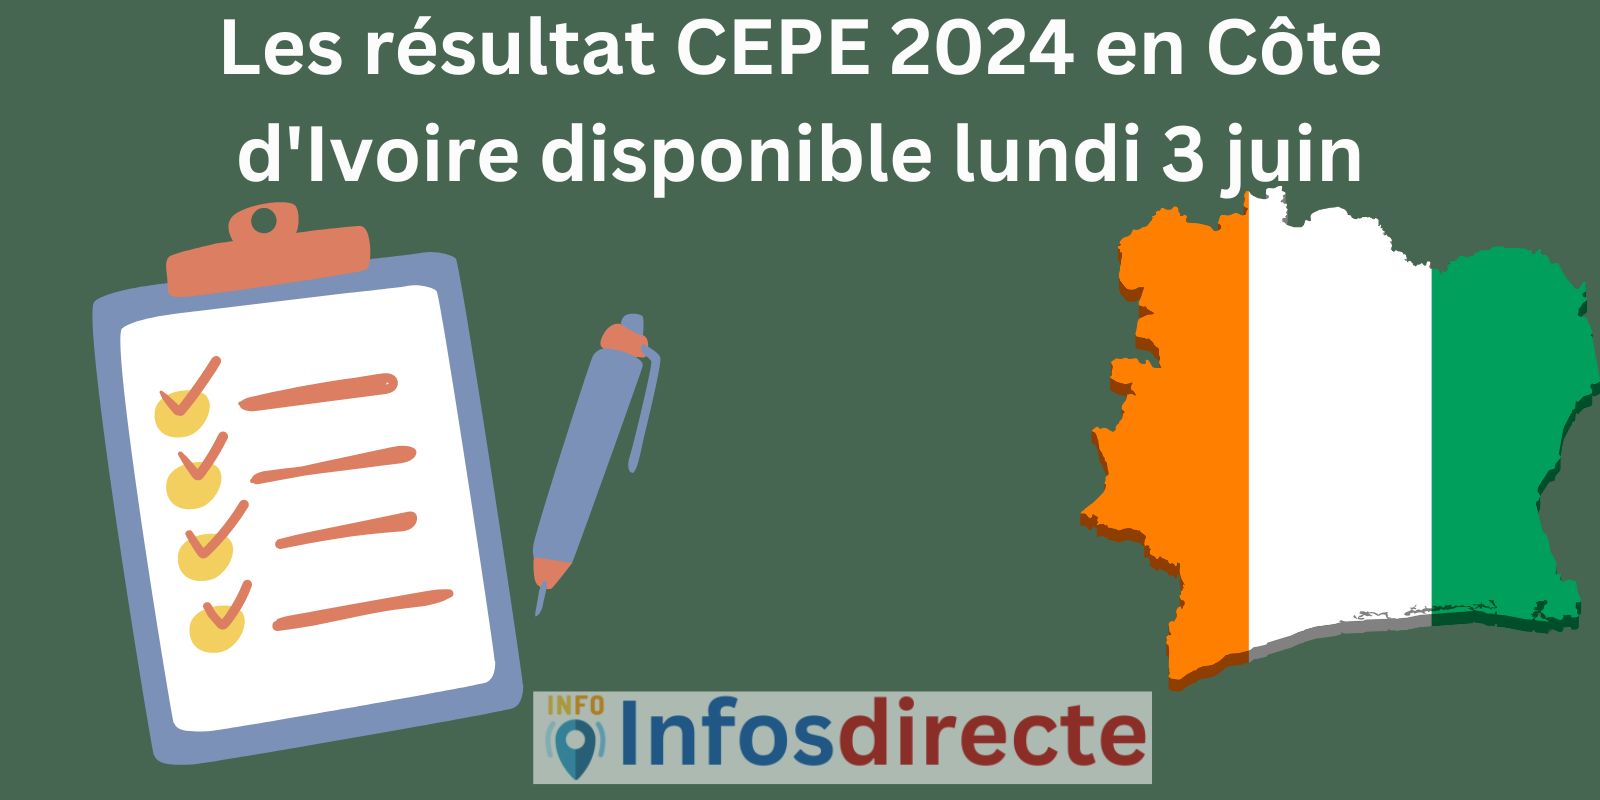 Les résultat CEPE 2024 en Côte d'Ivoire disponible lundi 3 juin